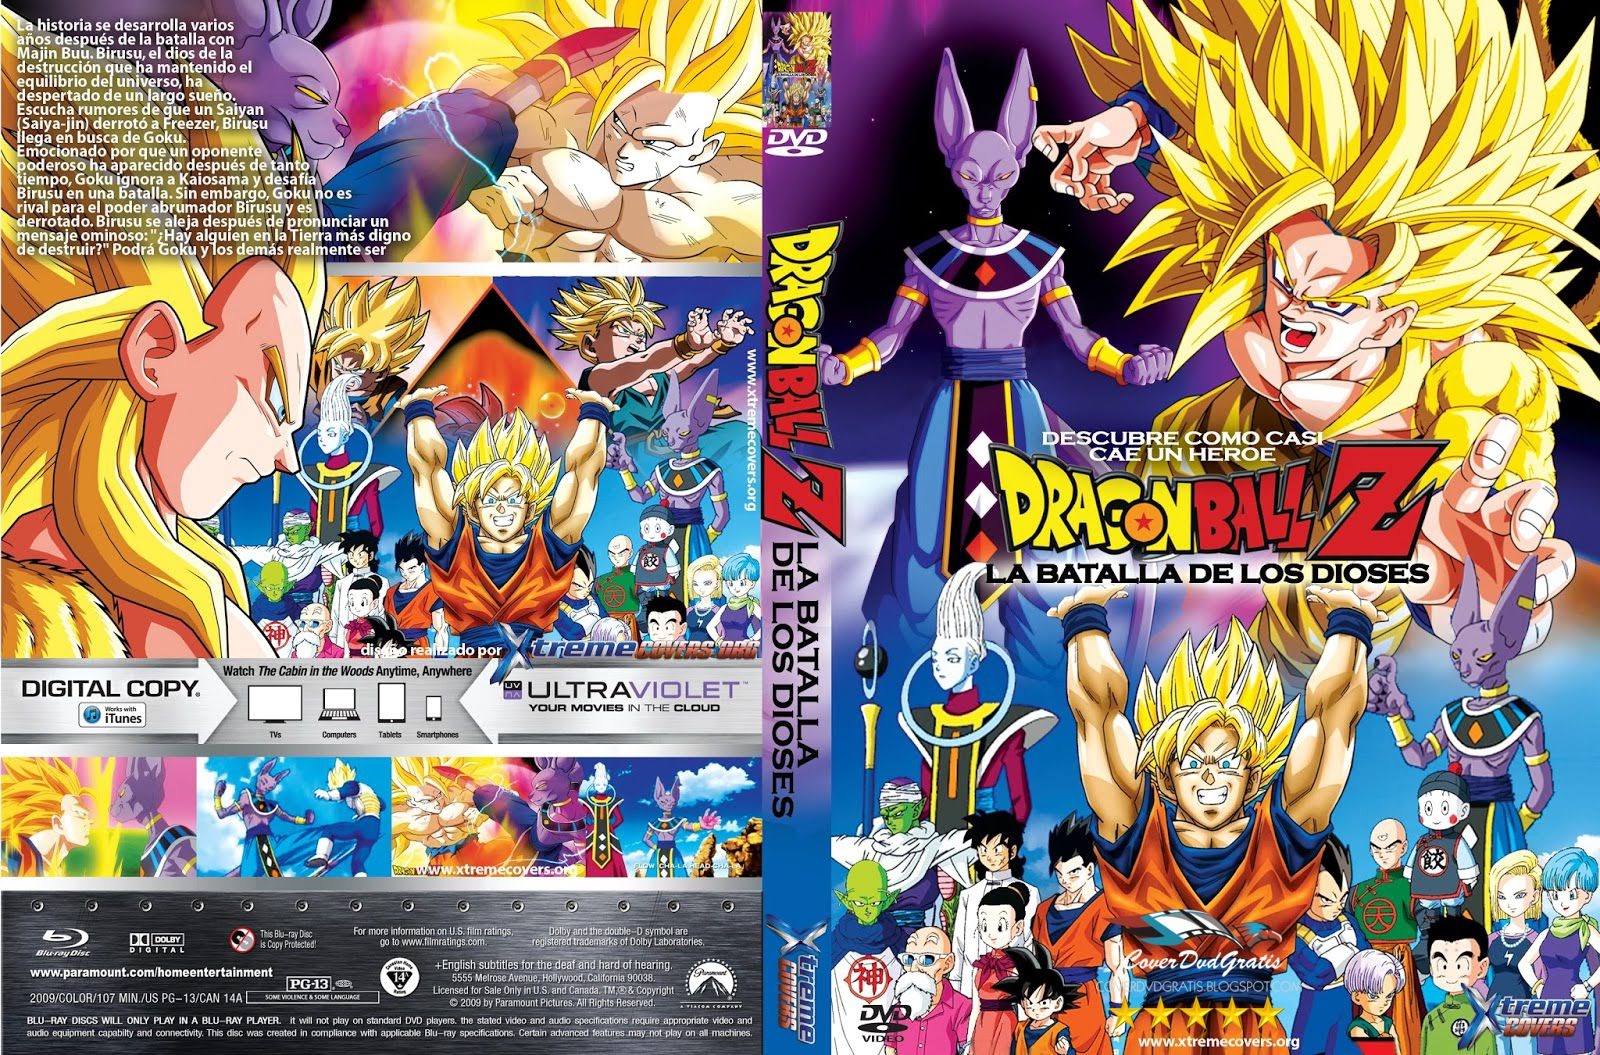 Dragon Ball Z: Battle of Gods 2013 DVD COVER - CoverDvdGratis